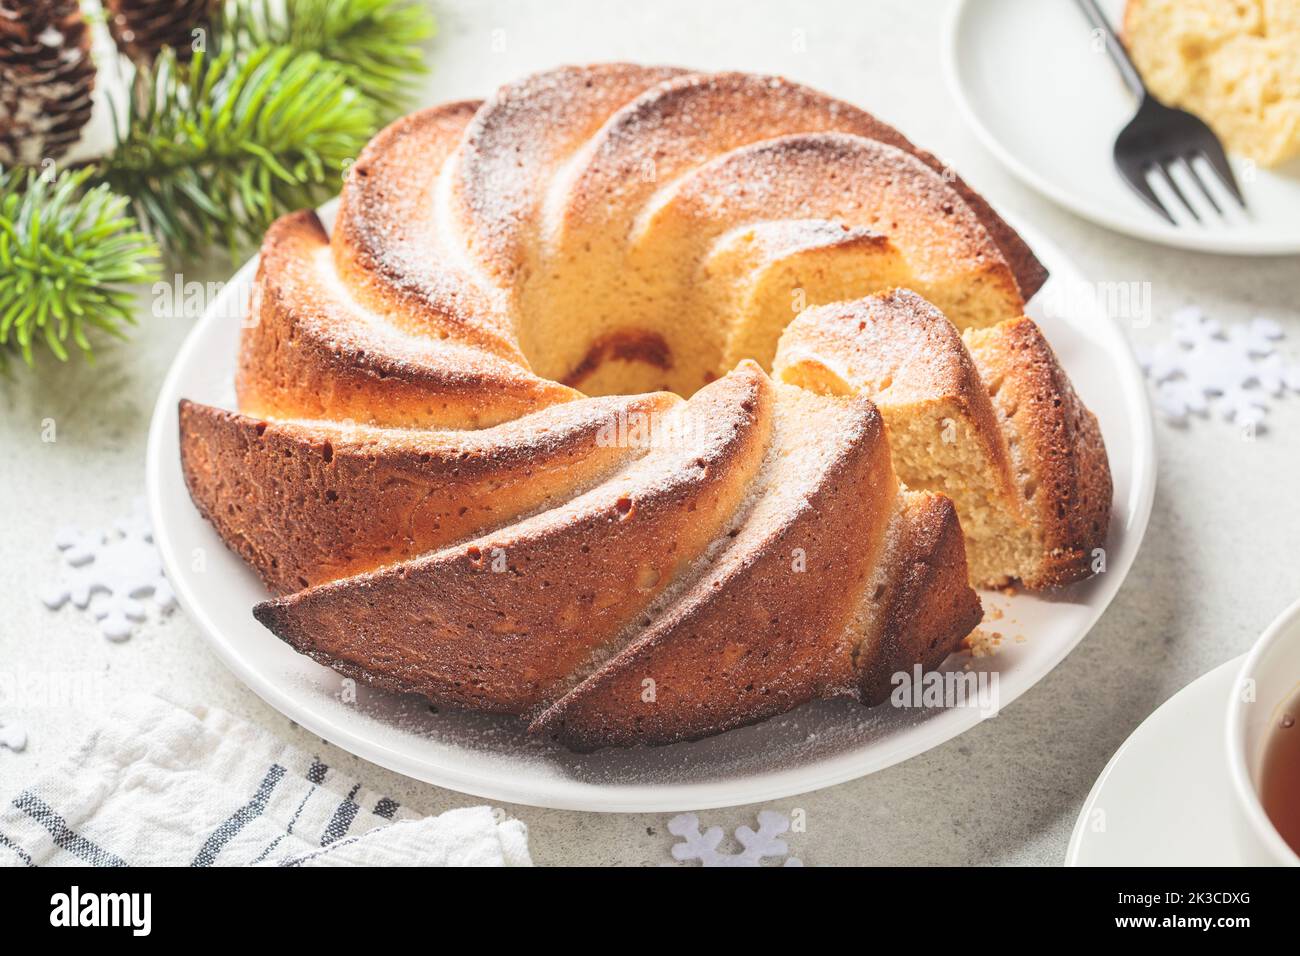 Dessert di Natale, primo piano. Torta alla vaniglia con zucchero a velo su un piatto bianco, fondo grigio chiaro con rami di albero di Natale. Foto Stock